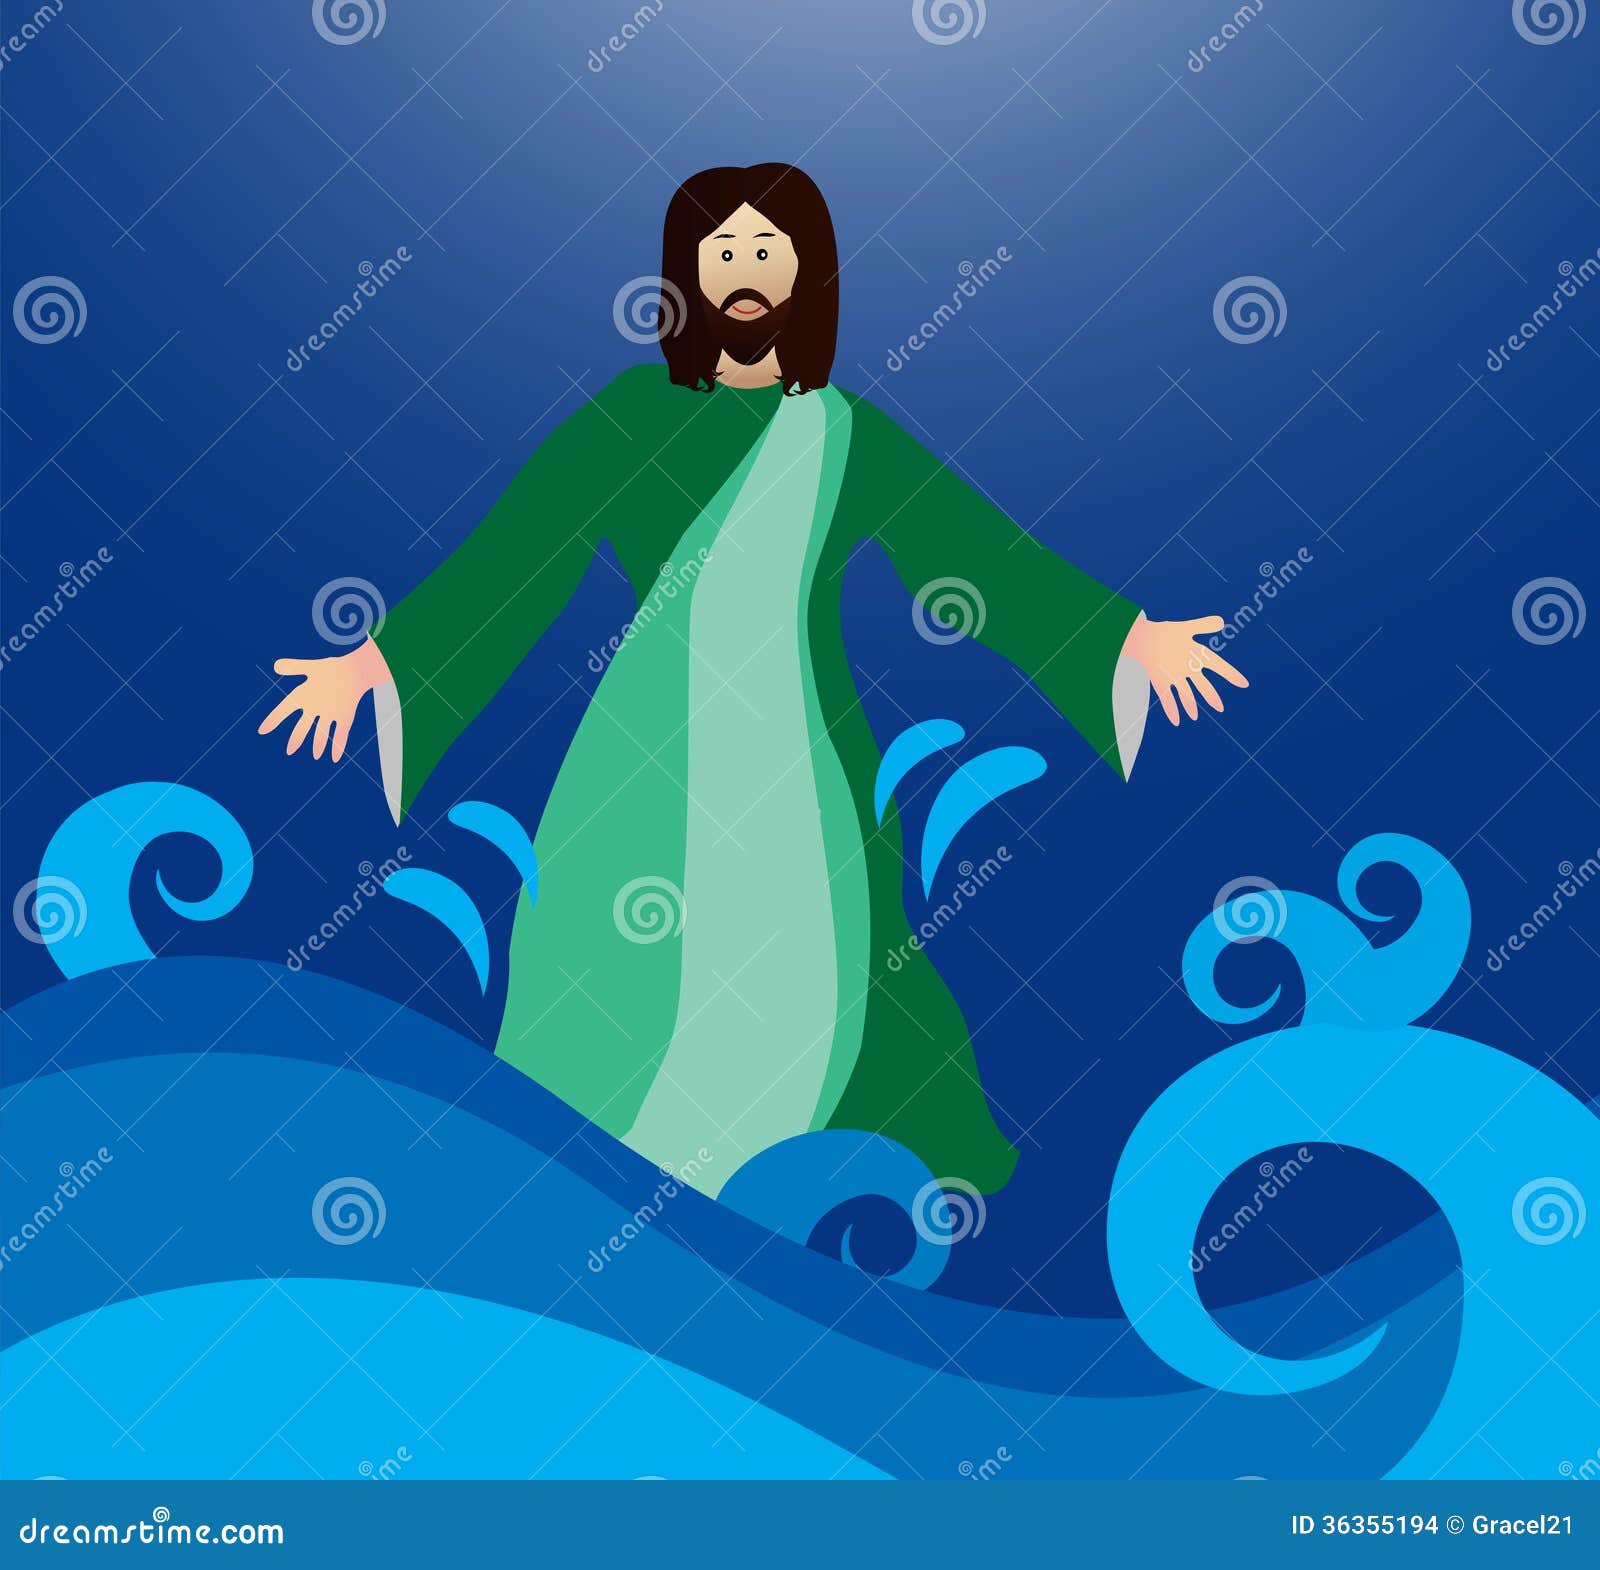 clip art jesus walking on water - photo #7